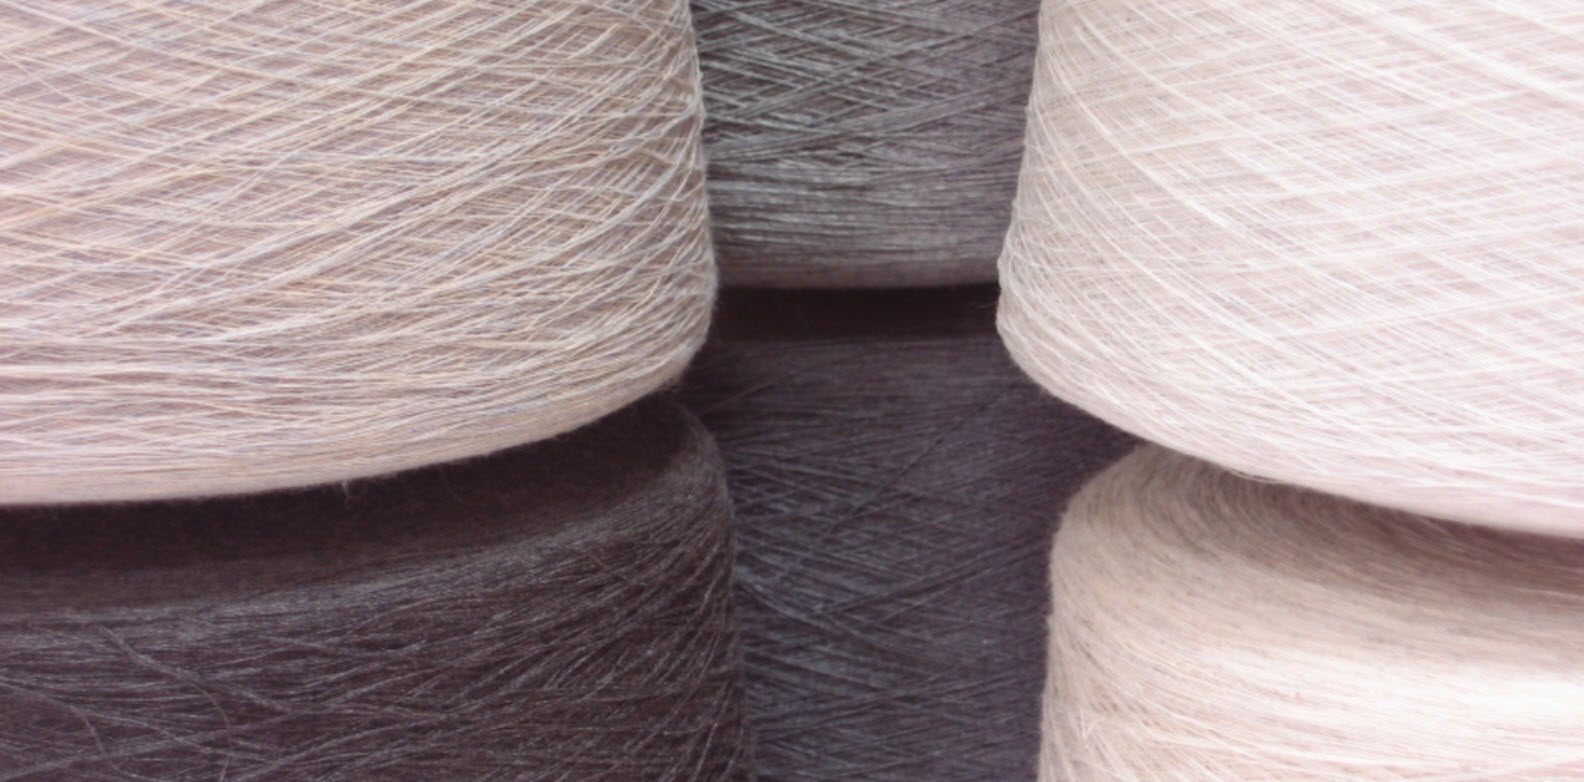 thread counts in quilt doona fabrics